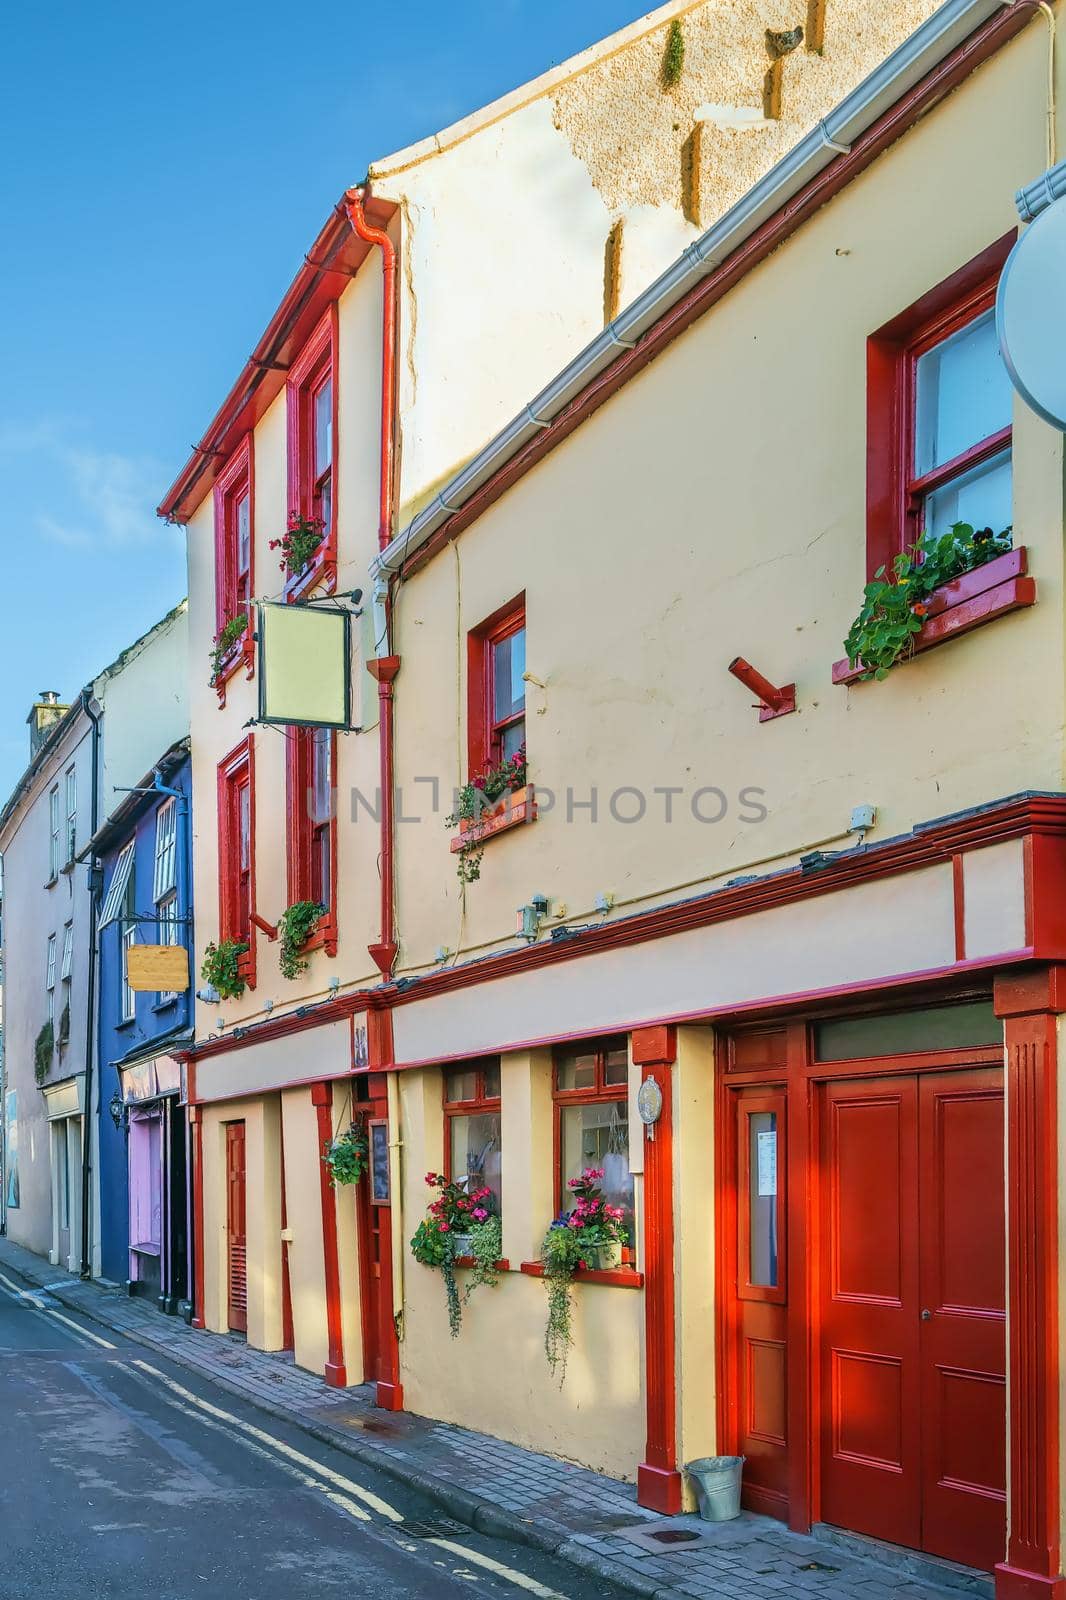 Street in Kinsale, Ireland by borisb17